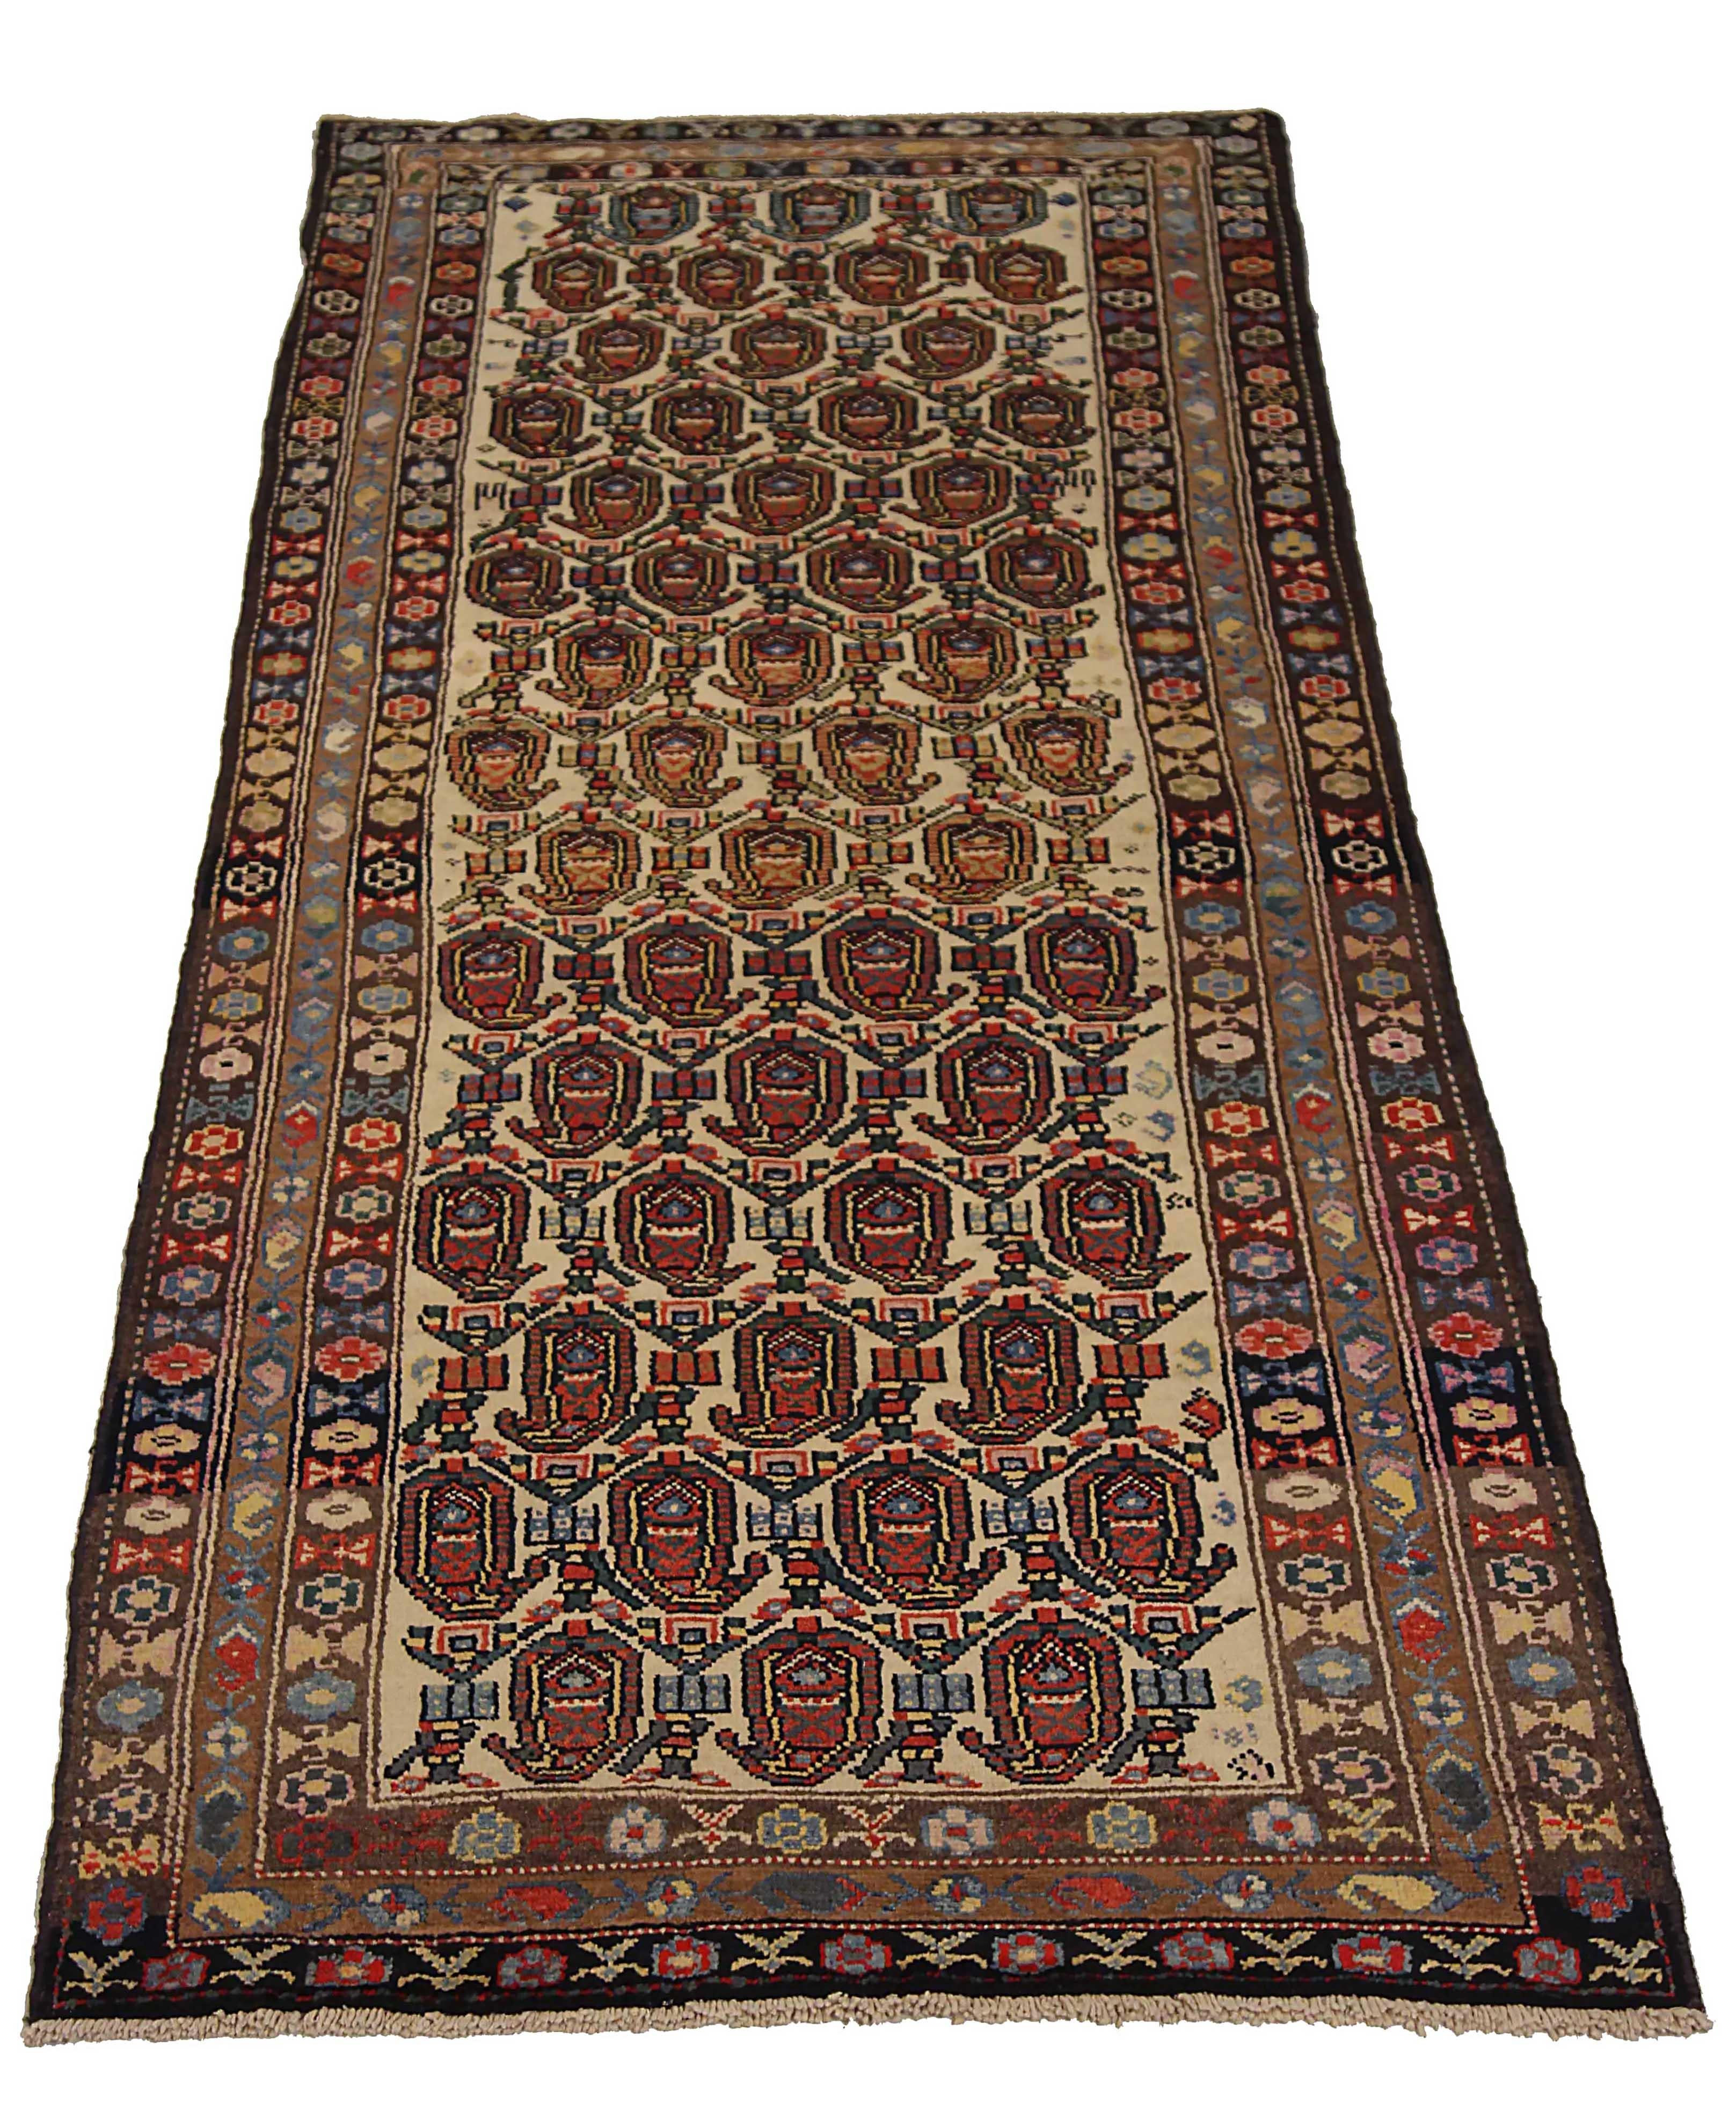 Antiker persischer Teppich, handgewebt aus feinster Schafswolle. Es ist mit natürlichen pflanzlichen Farbstoffen gefärbt, die für Menschen und Haustiere sicher sind. Es handelt sich um ein traditionelles Bakhtiar-Design, das von erfahrenen